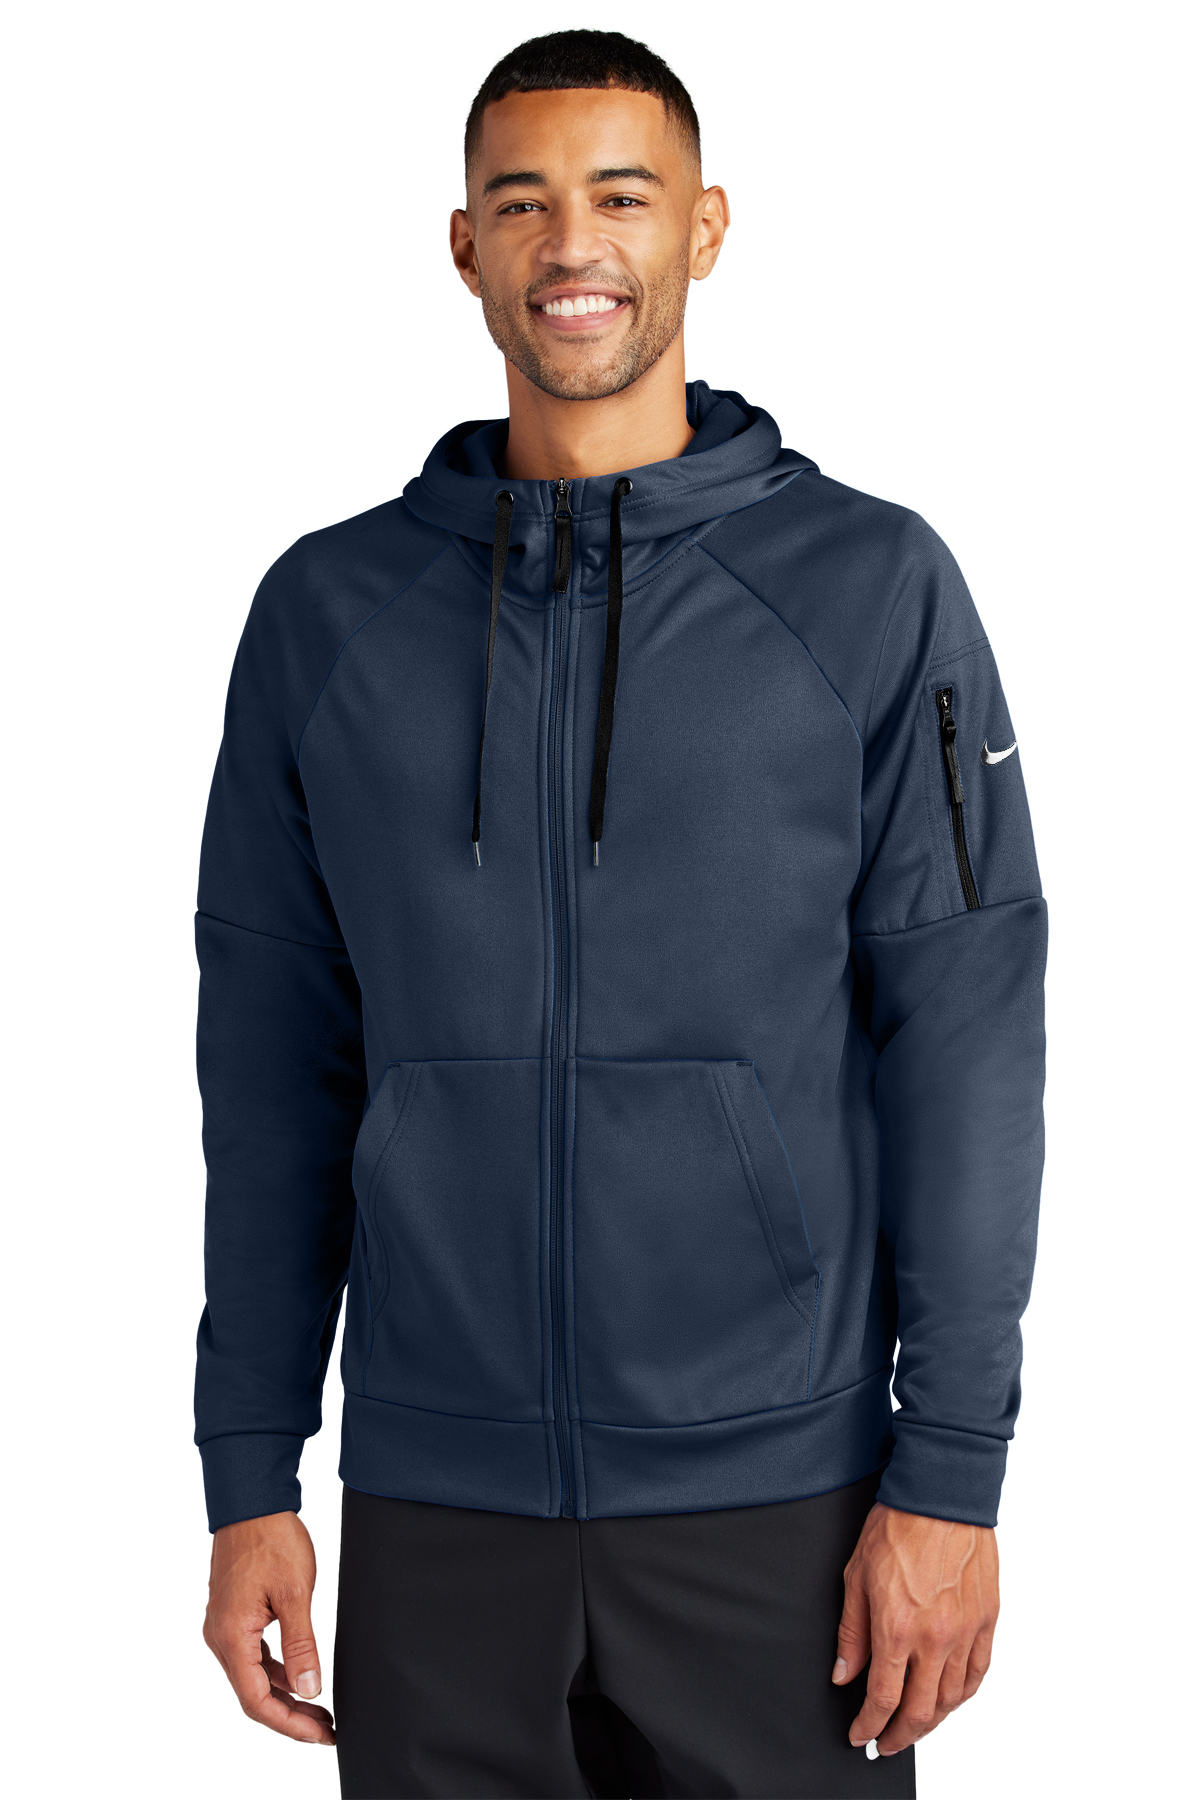 Nike Therma-FIT Pocket Full-Zip Fleece Hoodie | Product | SanMar